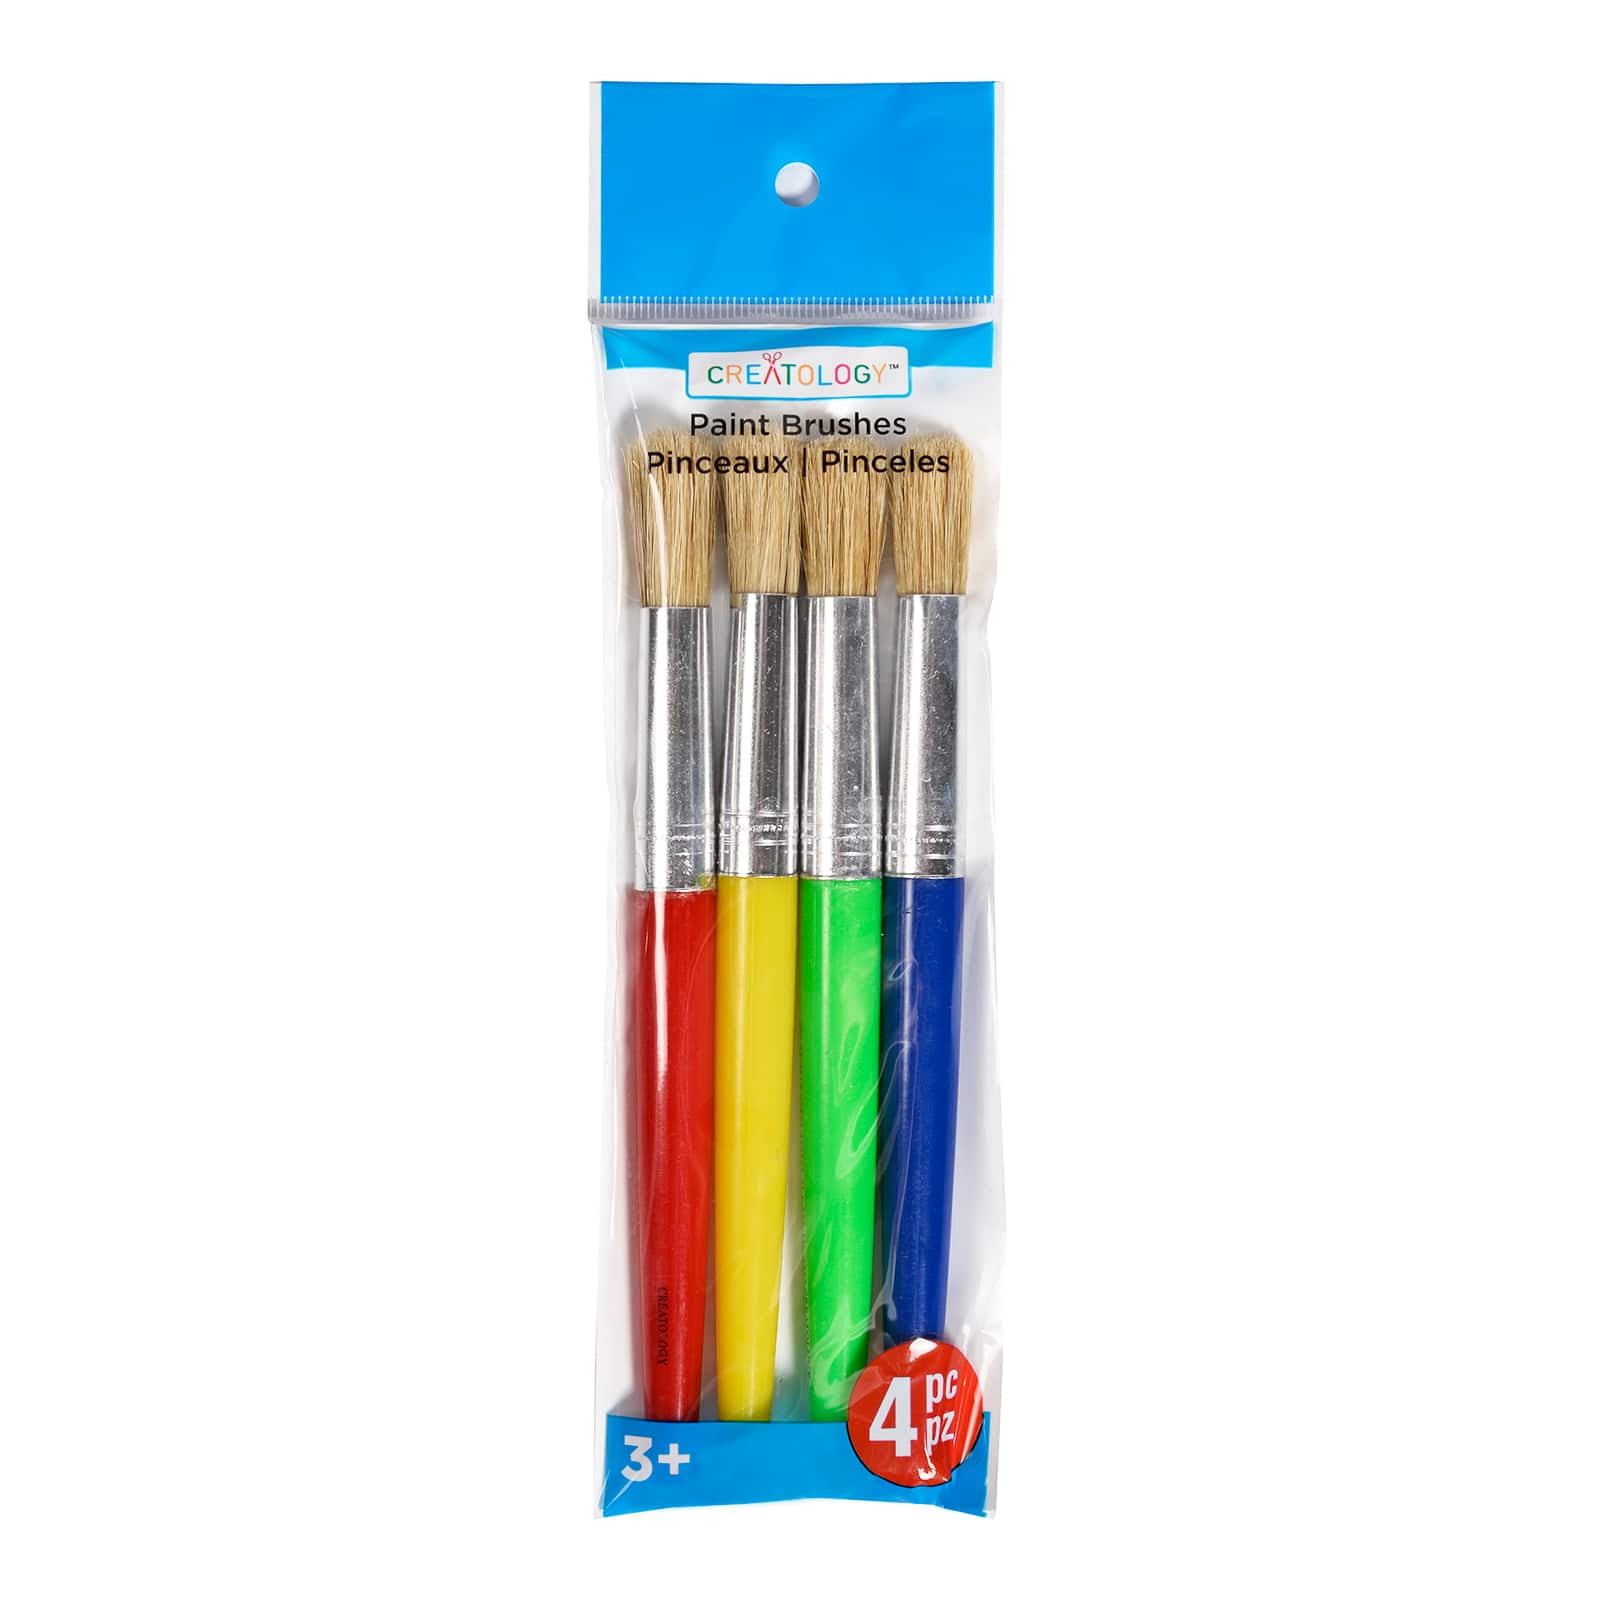 Crayola Jumbo Watercolors and Brush - 00517